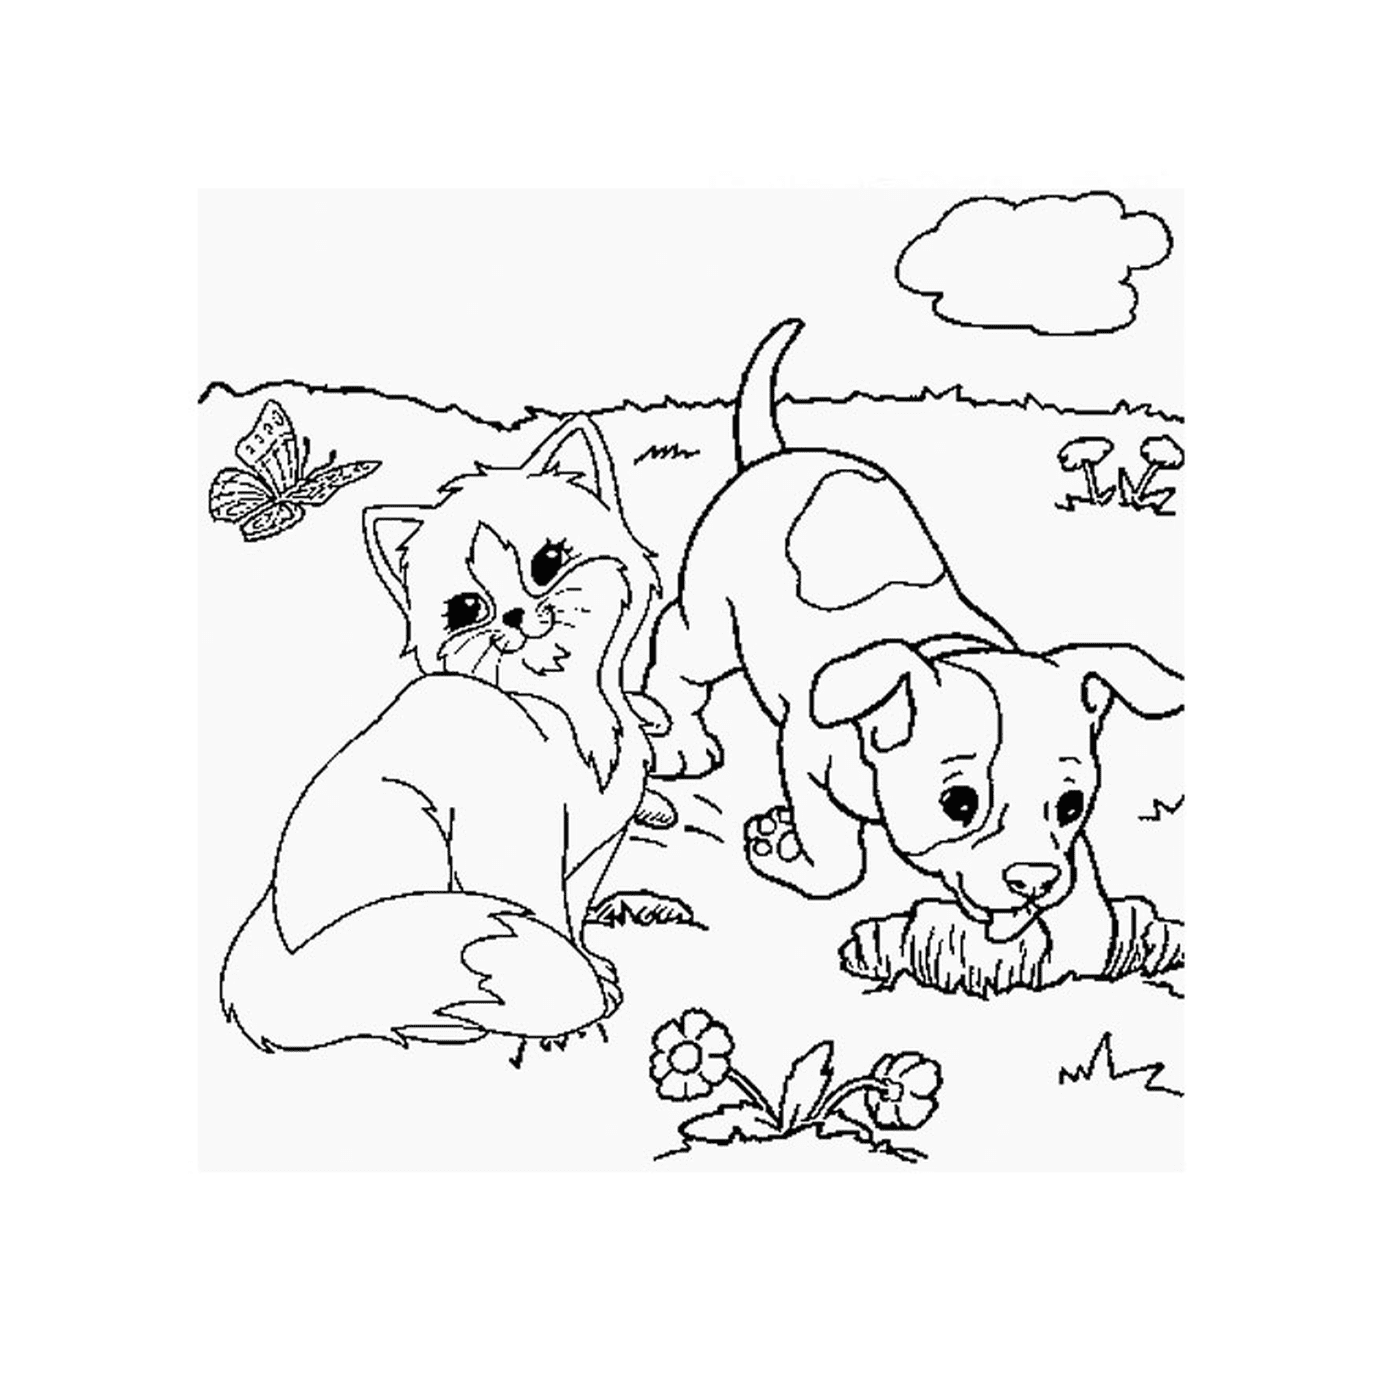  Un cucciolo e un gattino giocano nell'erba 